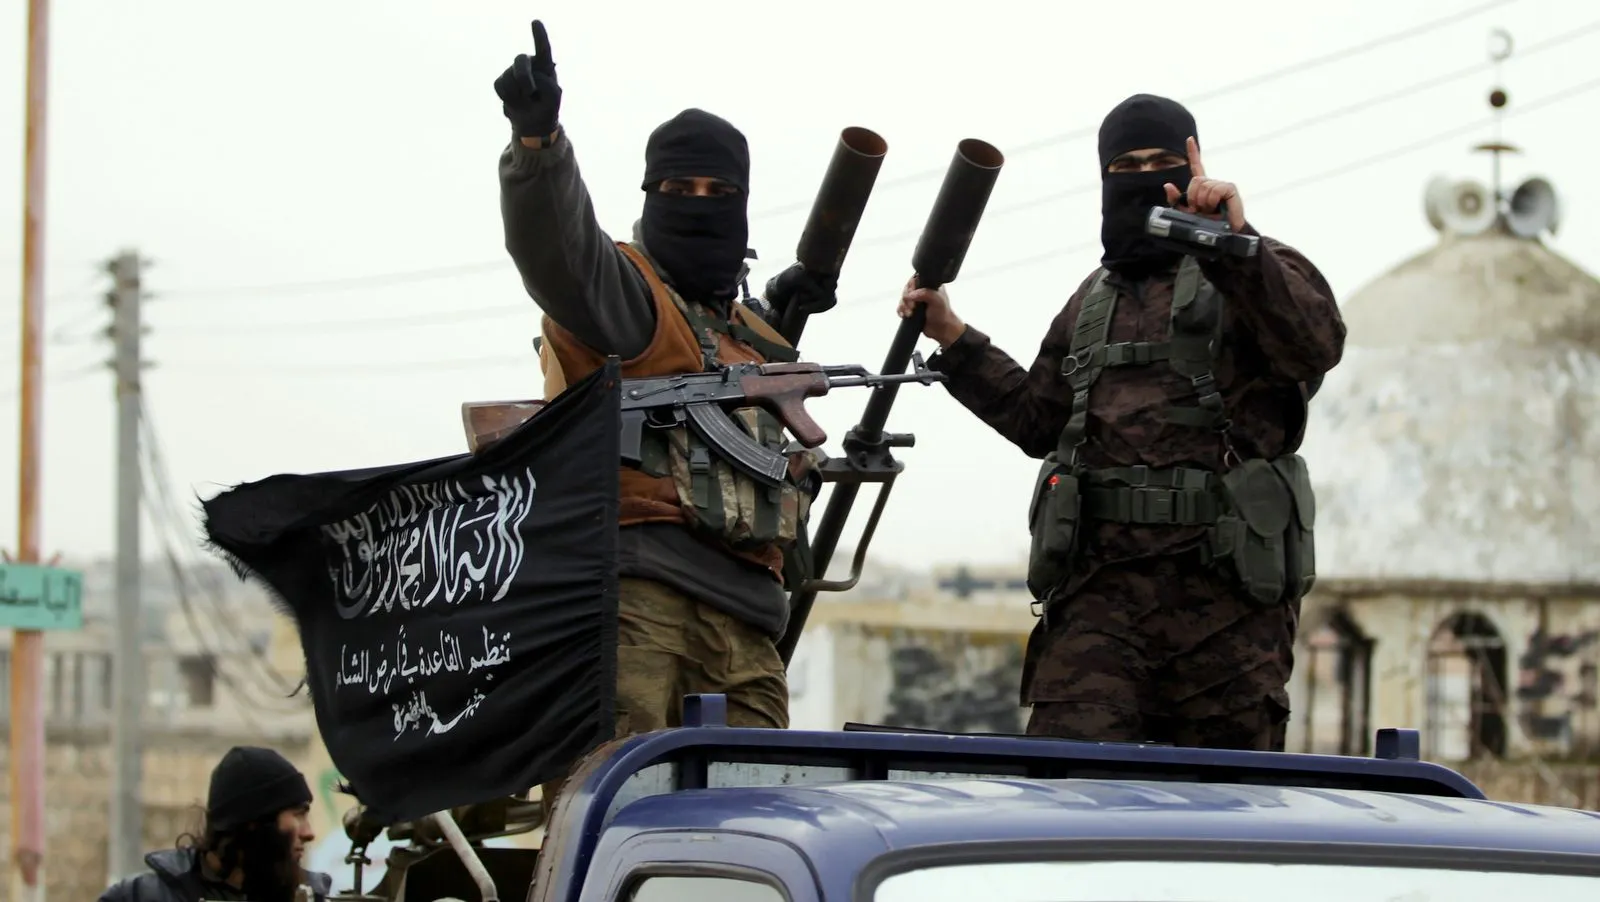 عناصر تنظيم "القاعدة" في سوريا - إنترنت